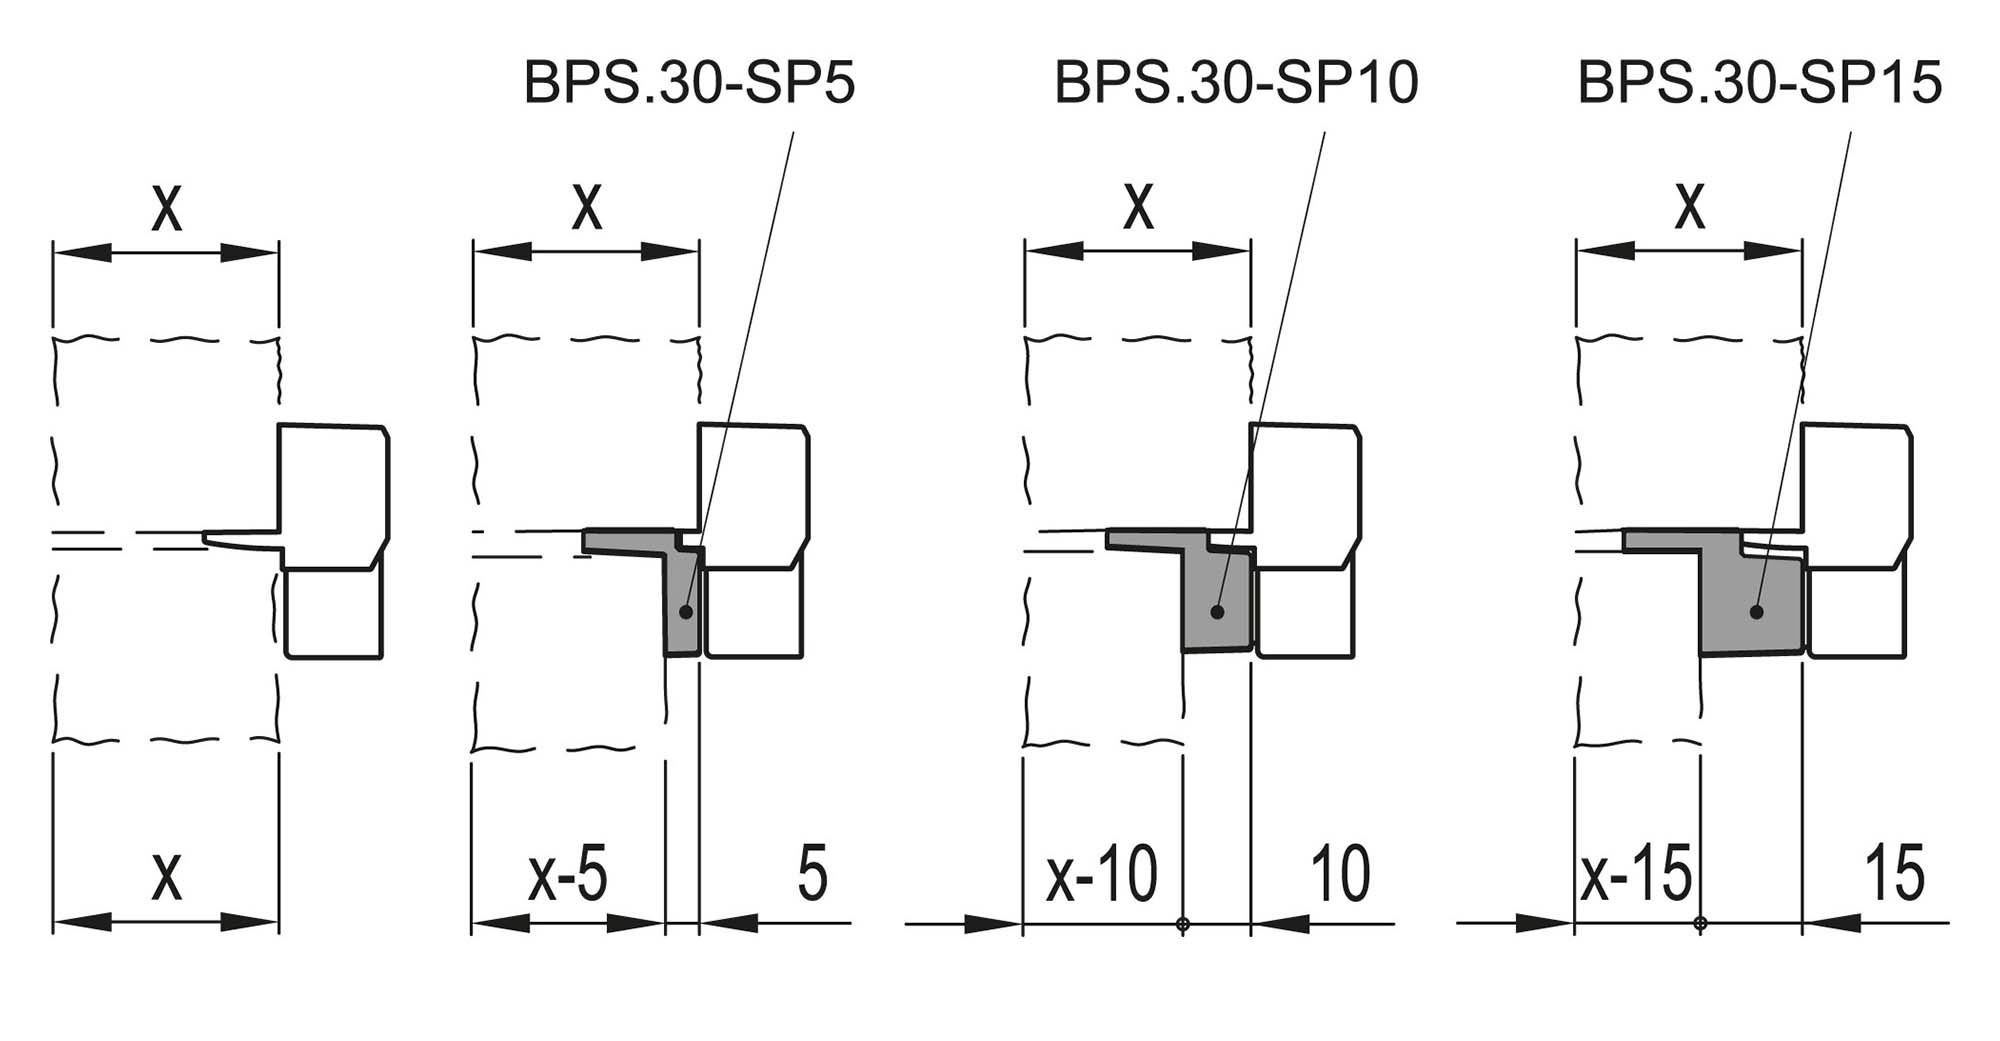 BPS.30-SP10